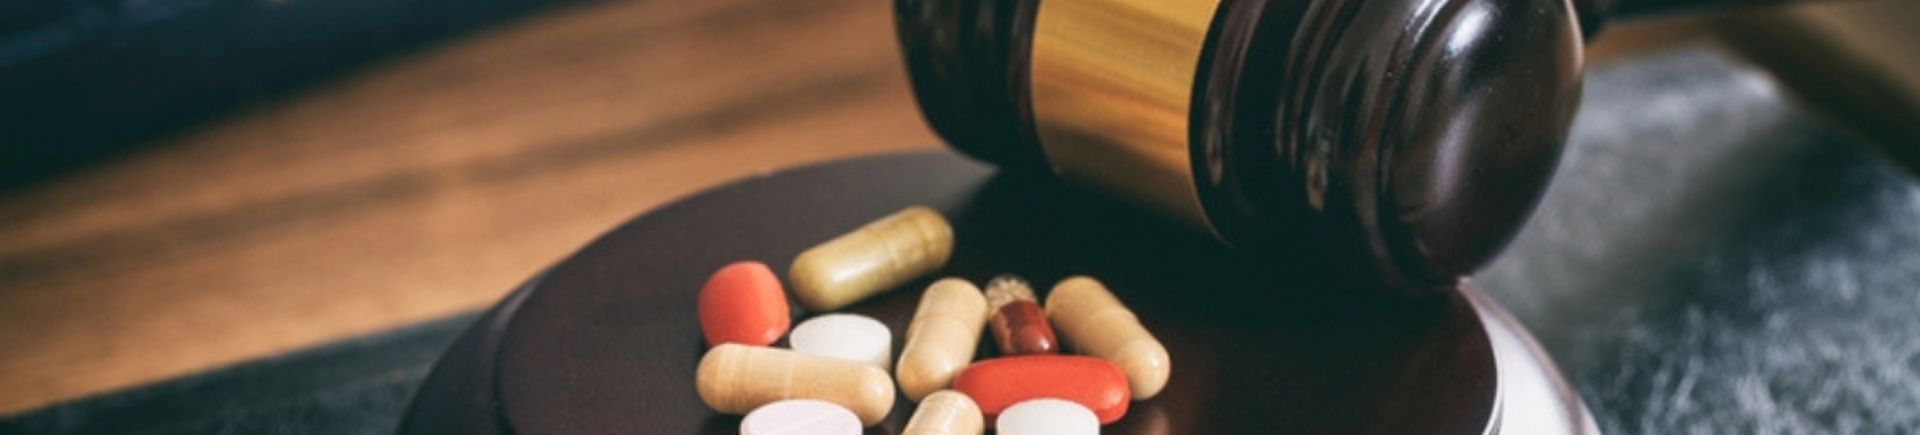 Bans Online Sale of Medicines